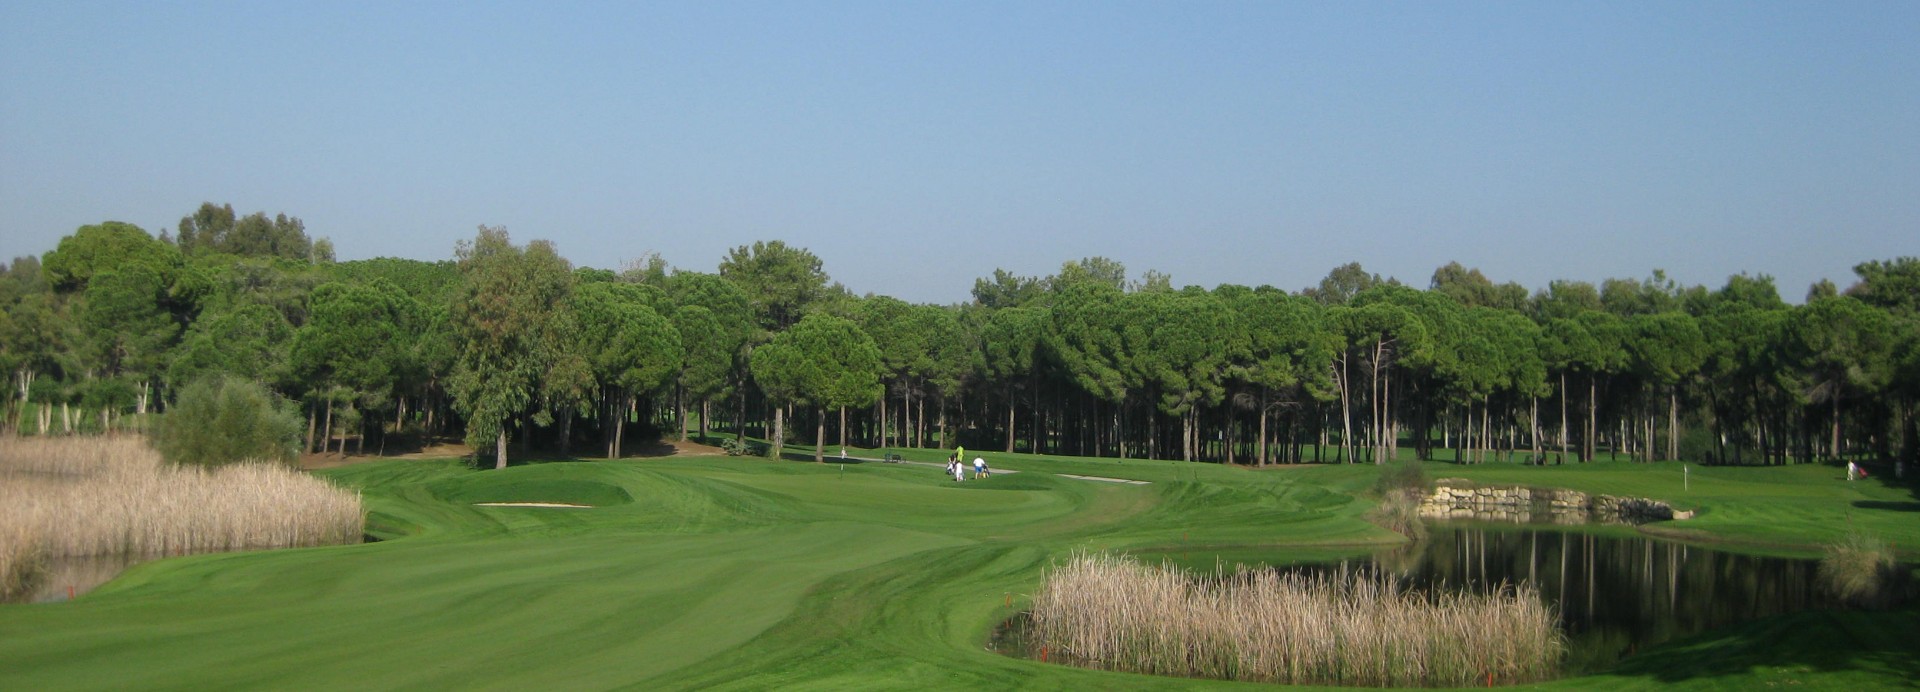 Antalya Golf Club - Sultan PGA  | Golfové zájezdy, golfová dovolená, luxusní golf